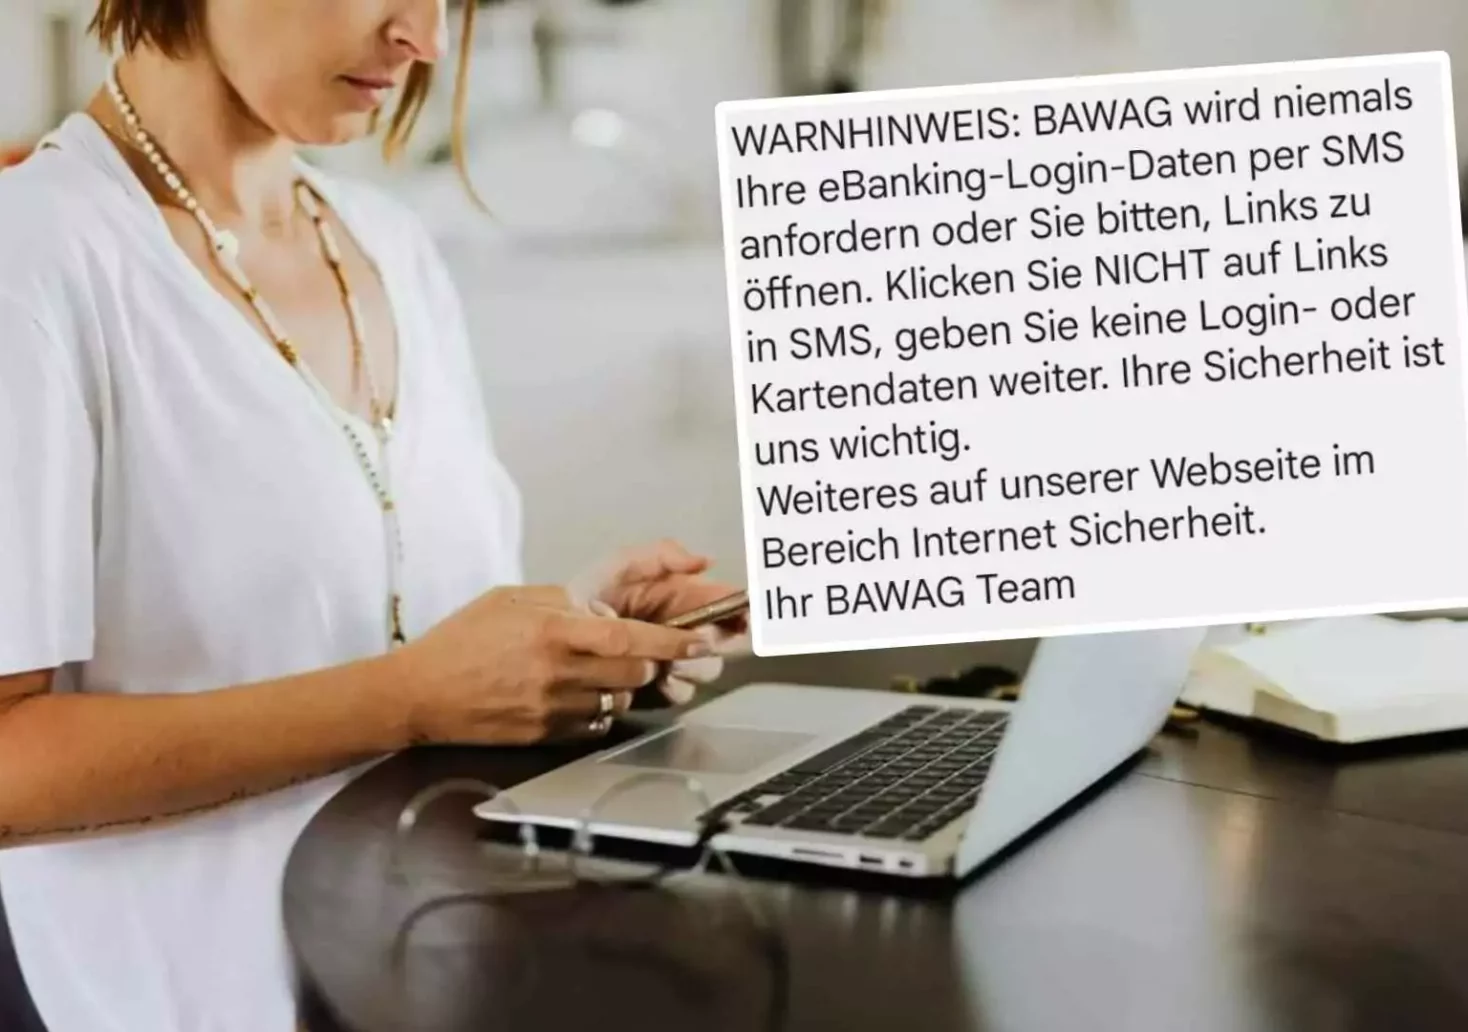 Foto in Beitrag von 5min.at: Zu sehen ist die BAWAG-SMS, die vor Betrügern warnt und eine Frau mit einem Handy in der Hand, die vor einem Laptop sitzt.